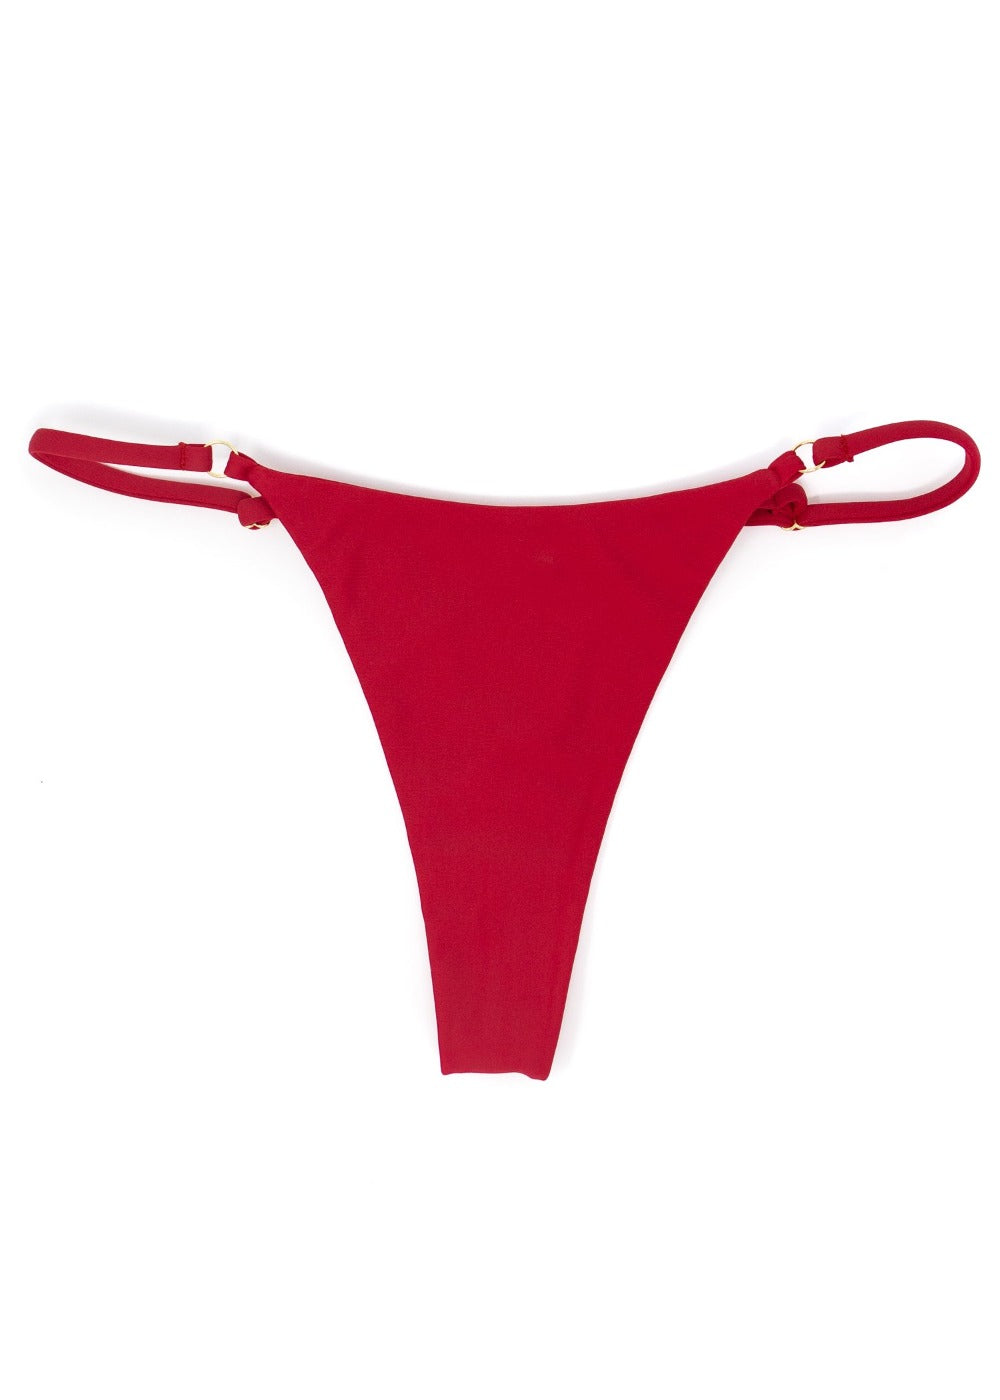 Shop Hawaii Red String Bikini Bottom